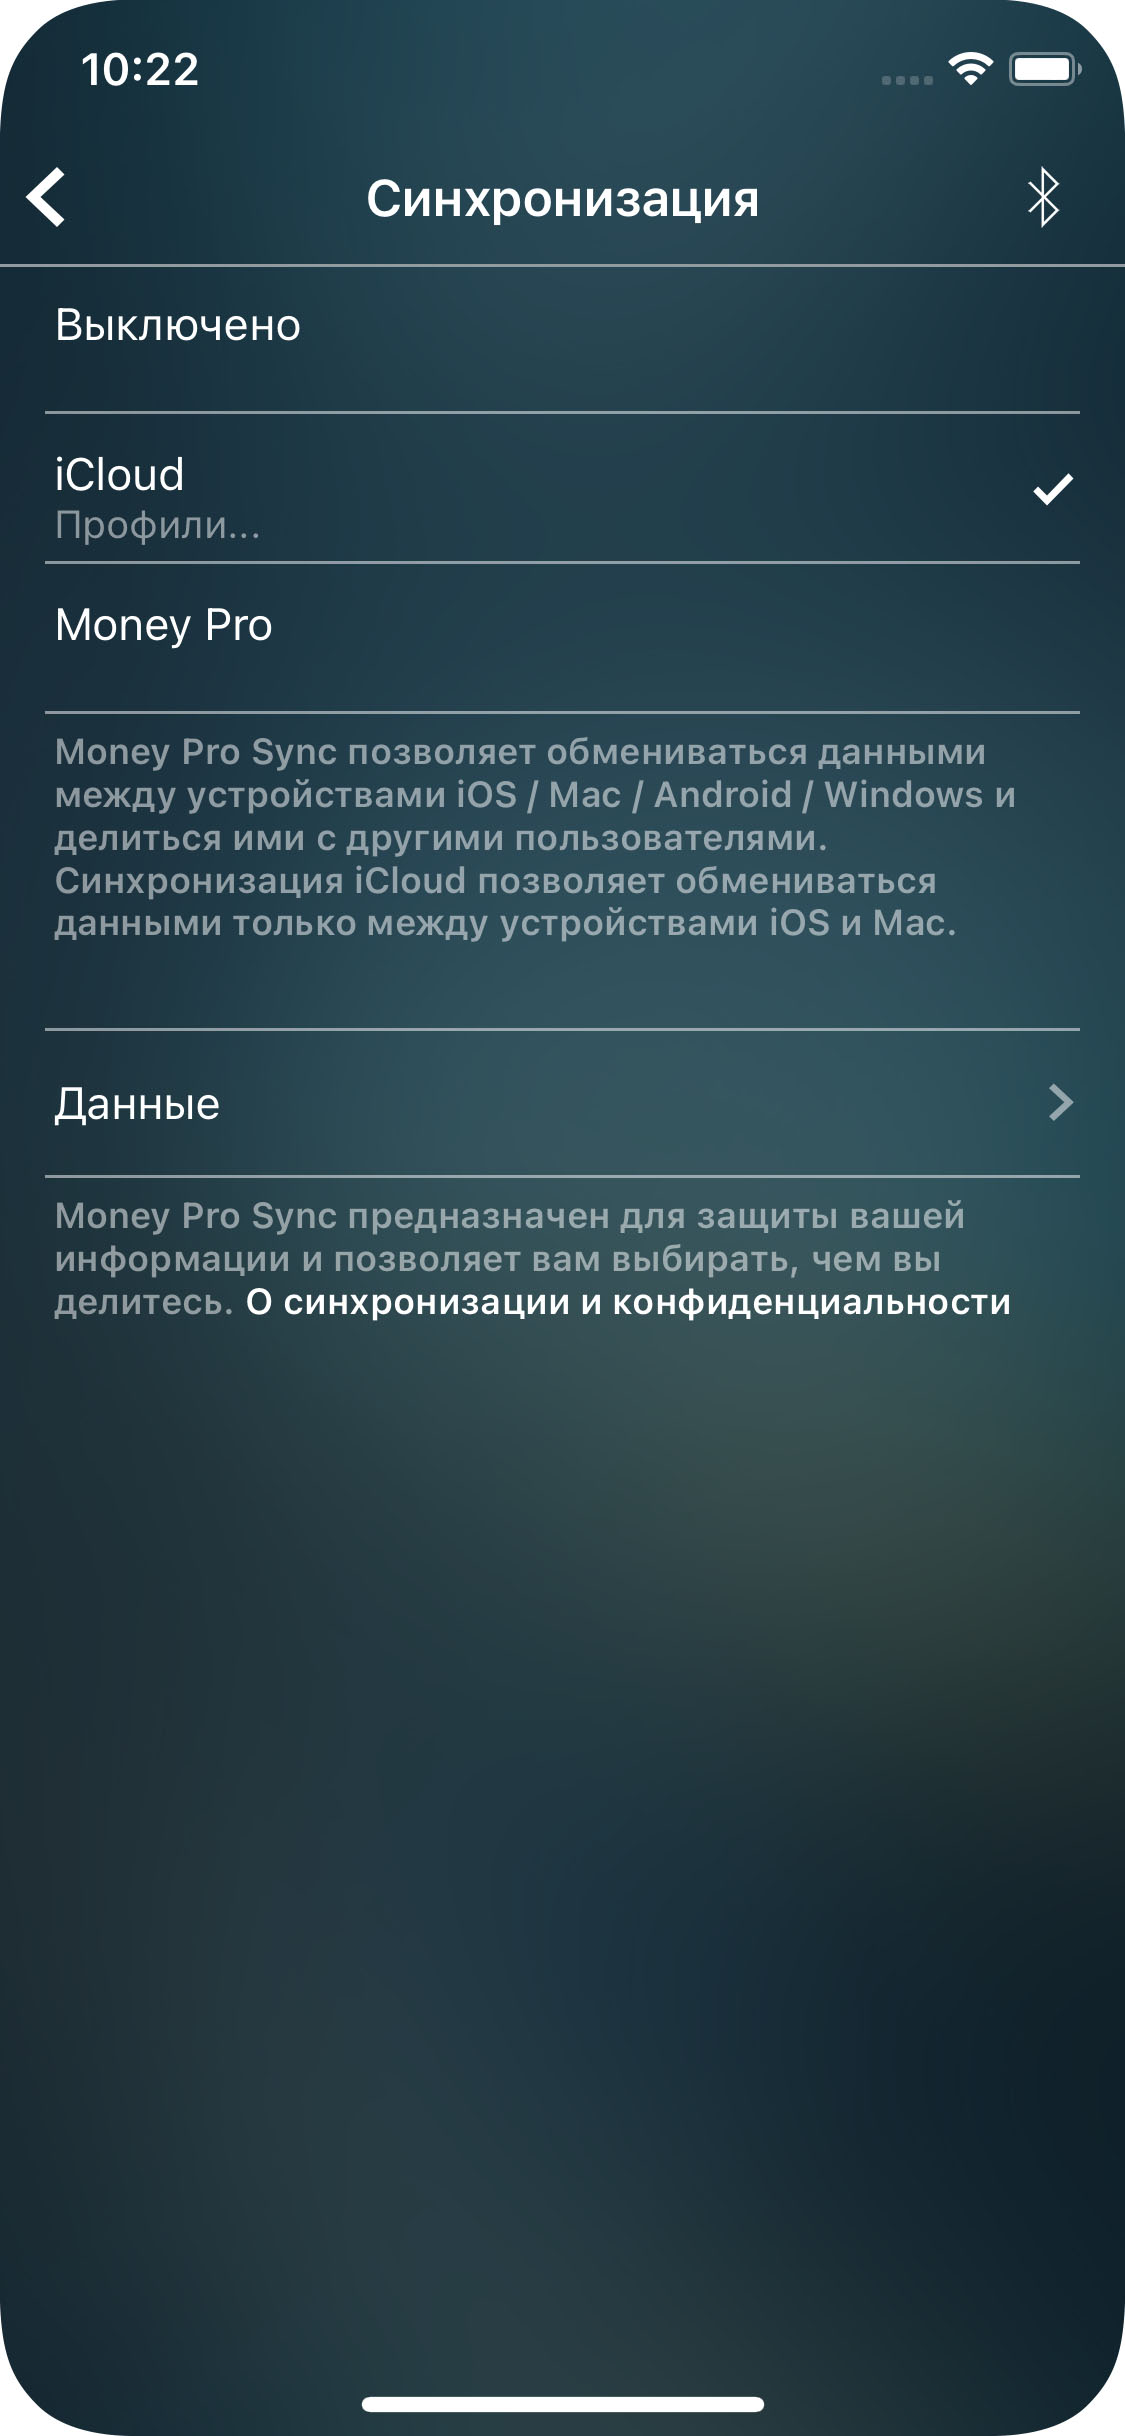 Money Pro - Синхронизация iCloud (iOS, Mac) - iPhone